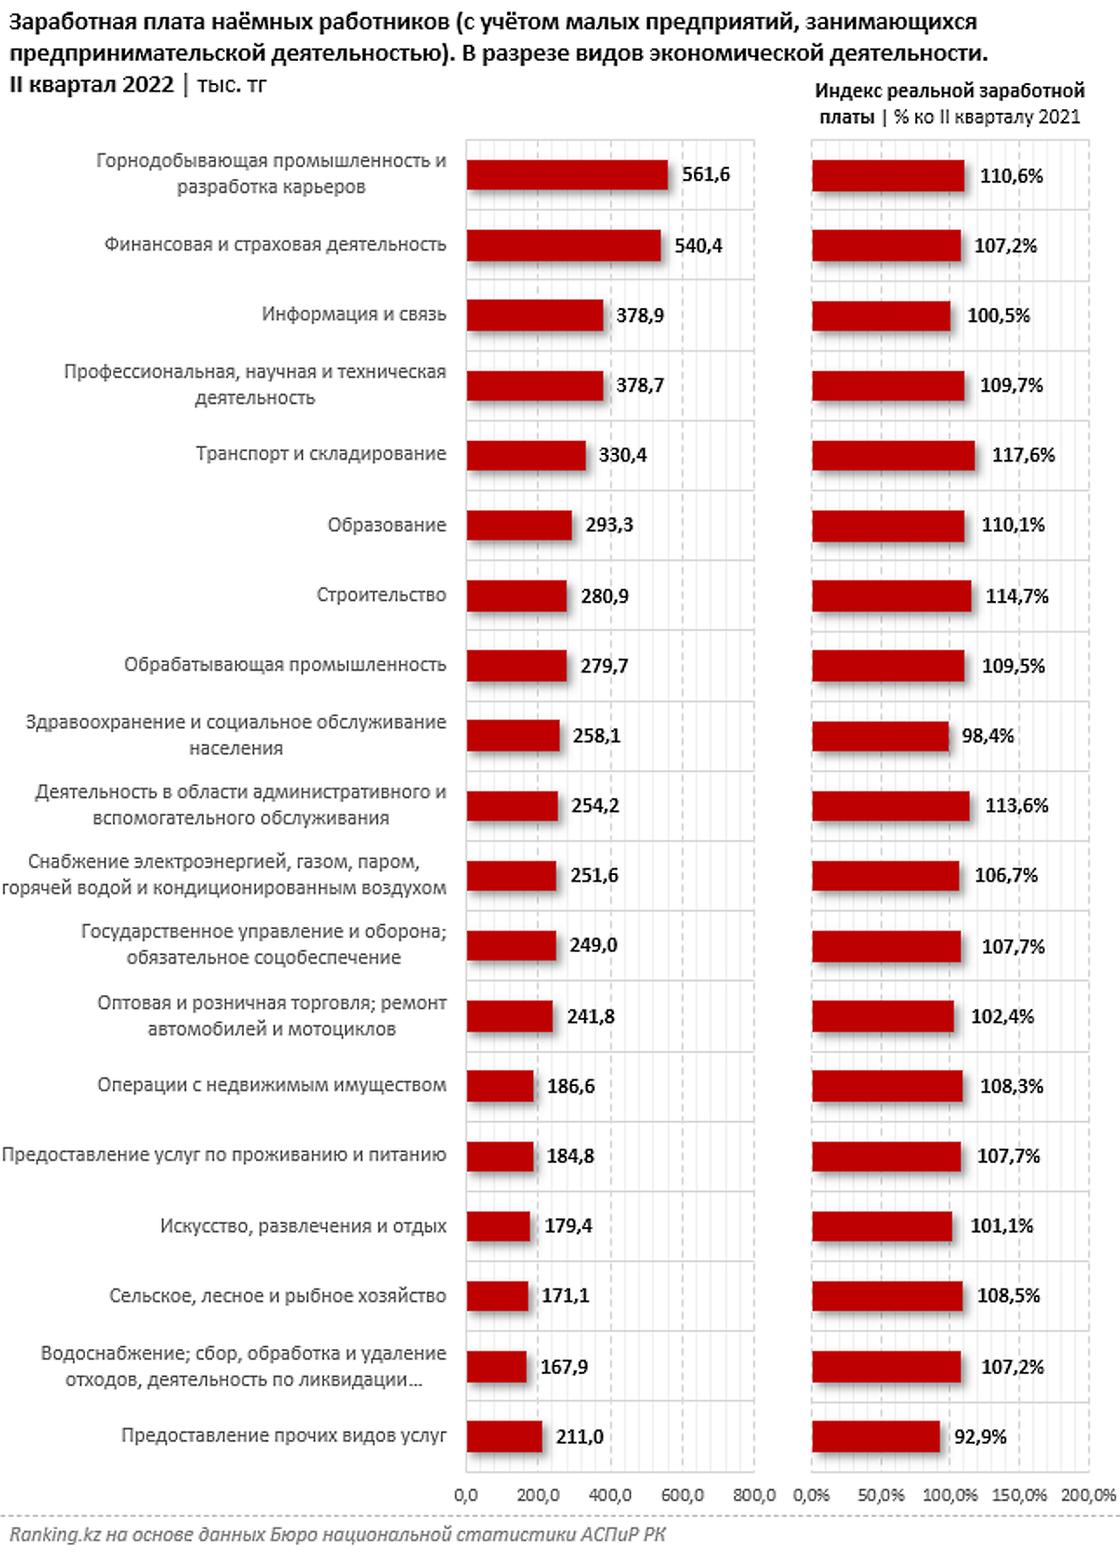 Где самые высокие зарплаты в Казахстане.